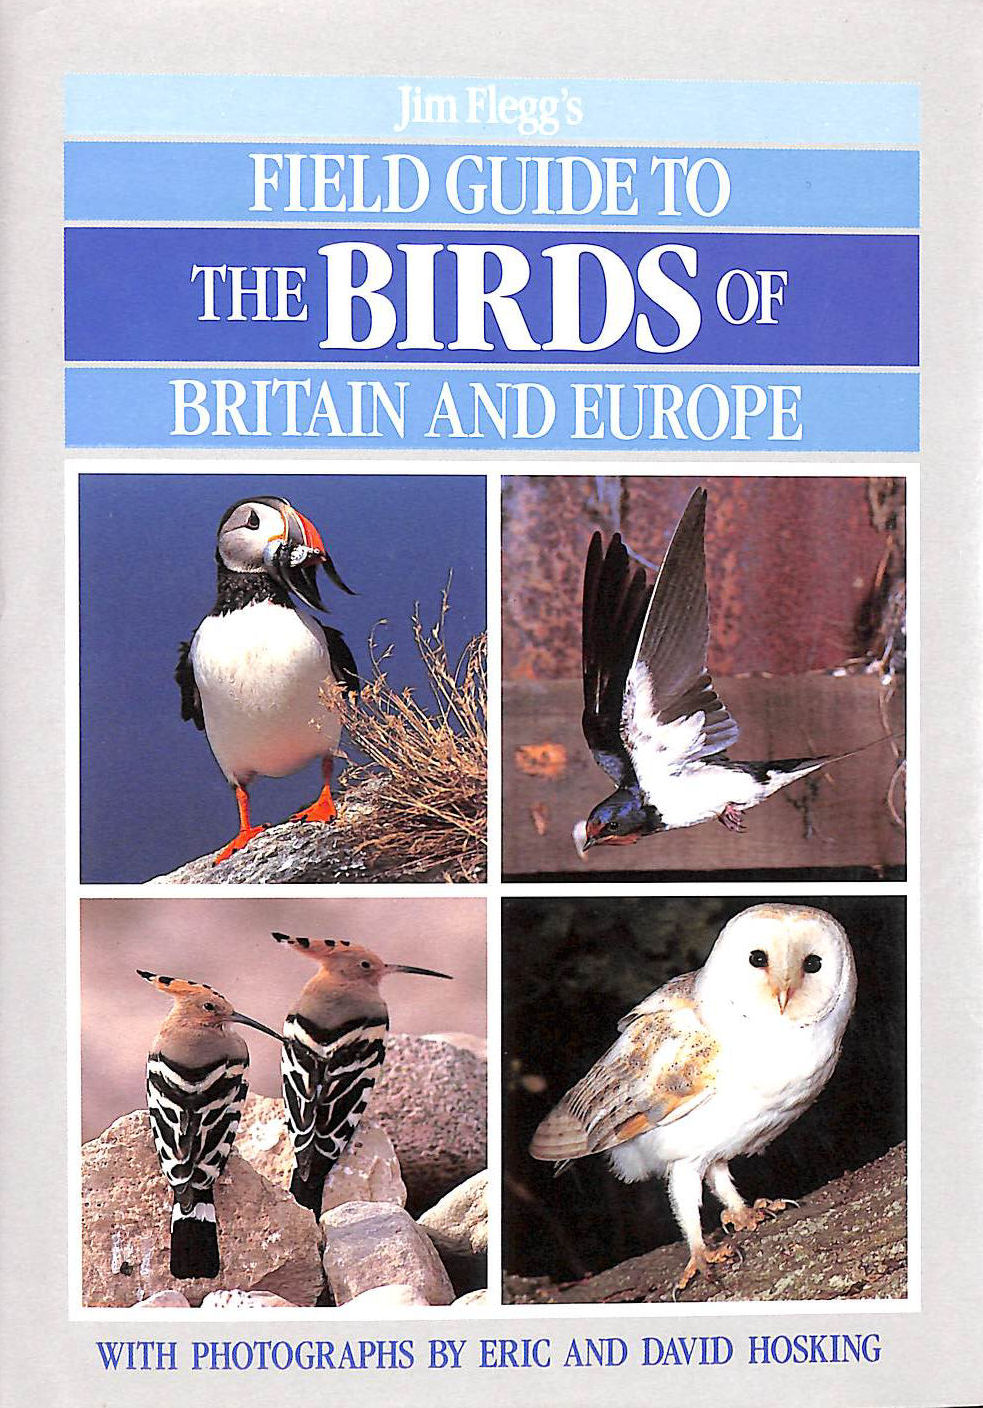 FLEGG, JIM; ETC.; HOSKING, DEREK [ILLUSTRATOR]; HOSKING, DAVID [ILLUSTRATOR]; - Field Guide to the Birds of Britain and Europe (Field Guides)